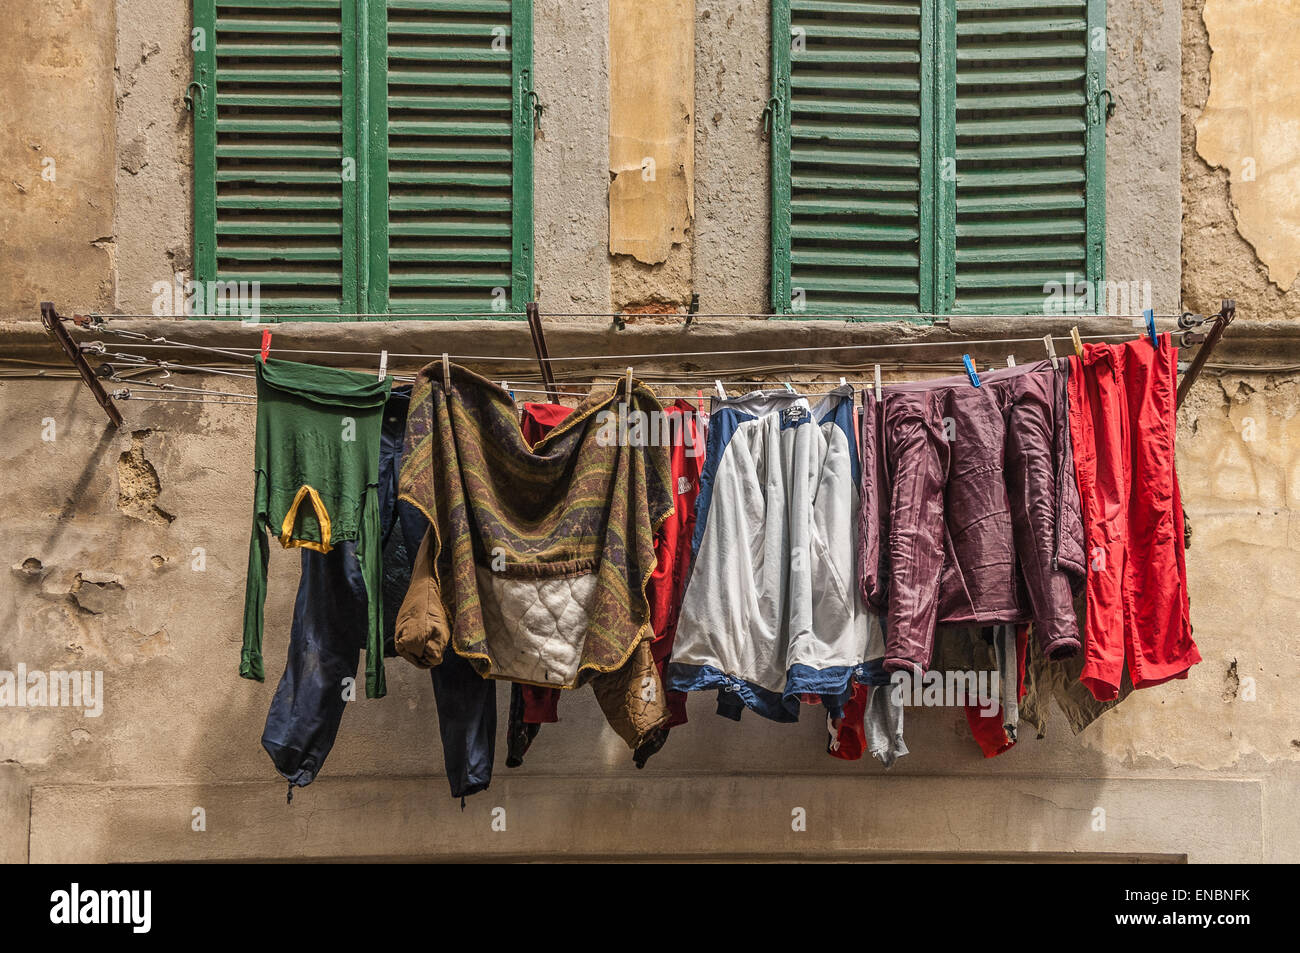 Wäsche aufhängen außerhalb Fenster in der Provinz von Arezzo, Italien  Stockfotografie - Alamy